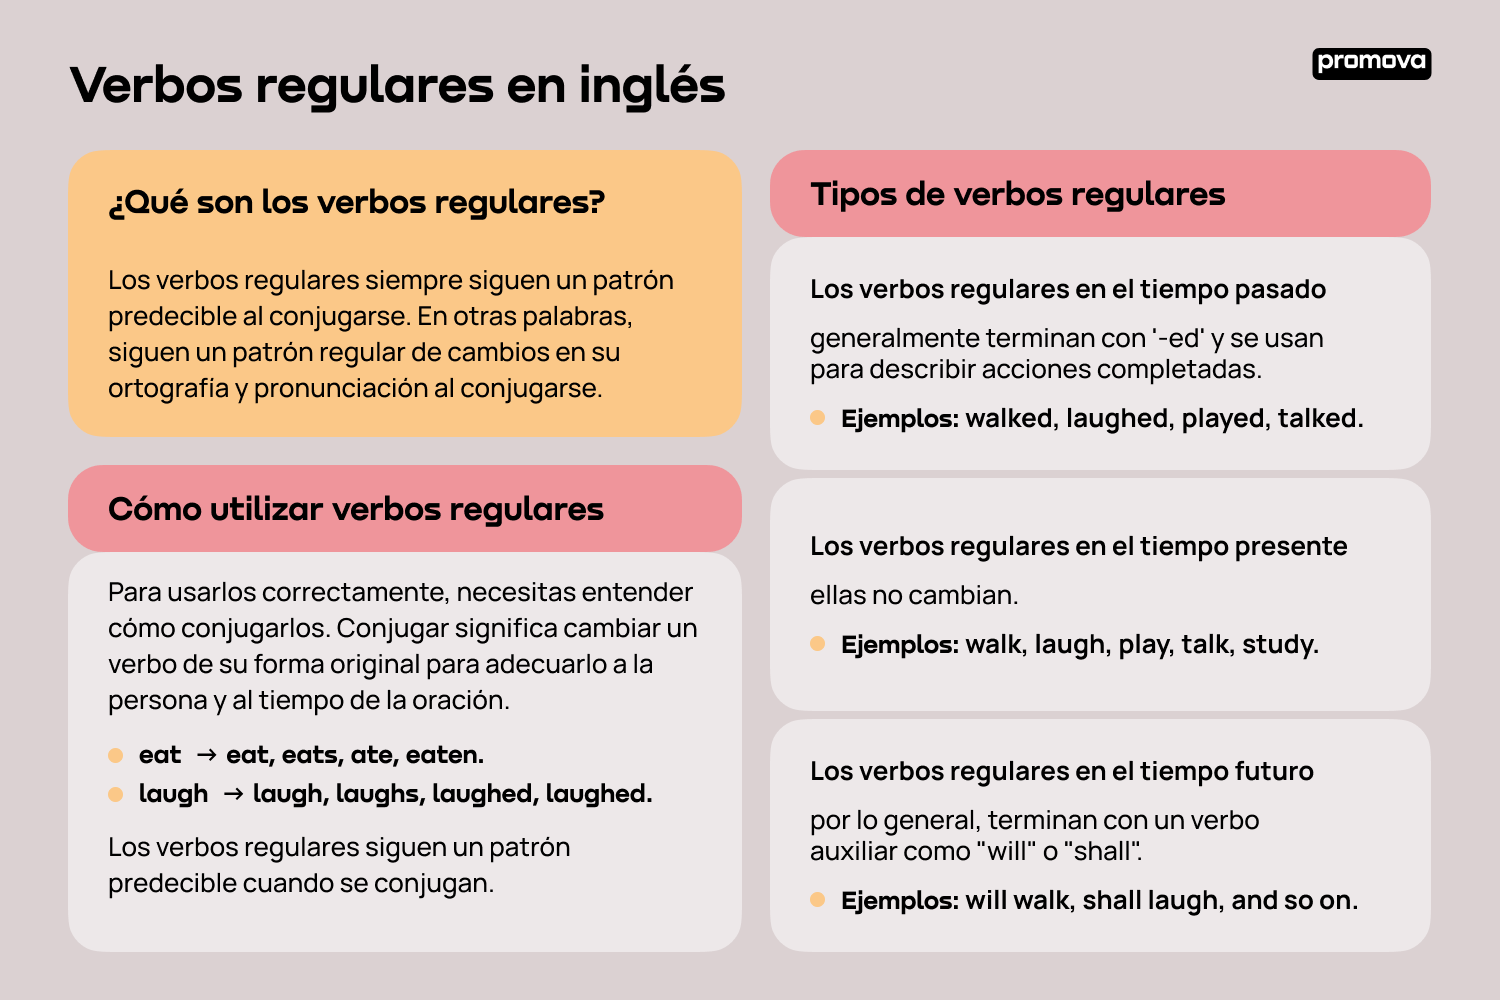 Explorando los verbos regulares en inglés: Ejemplos y conjugaciones